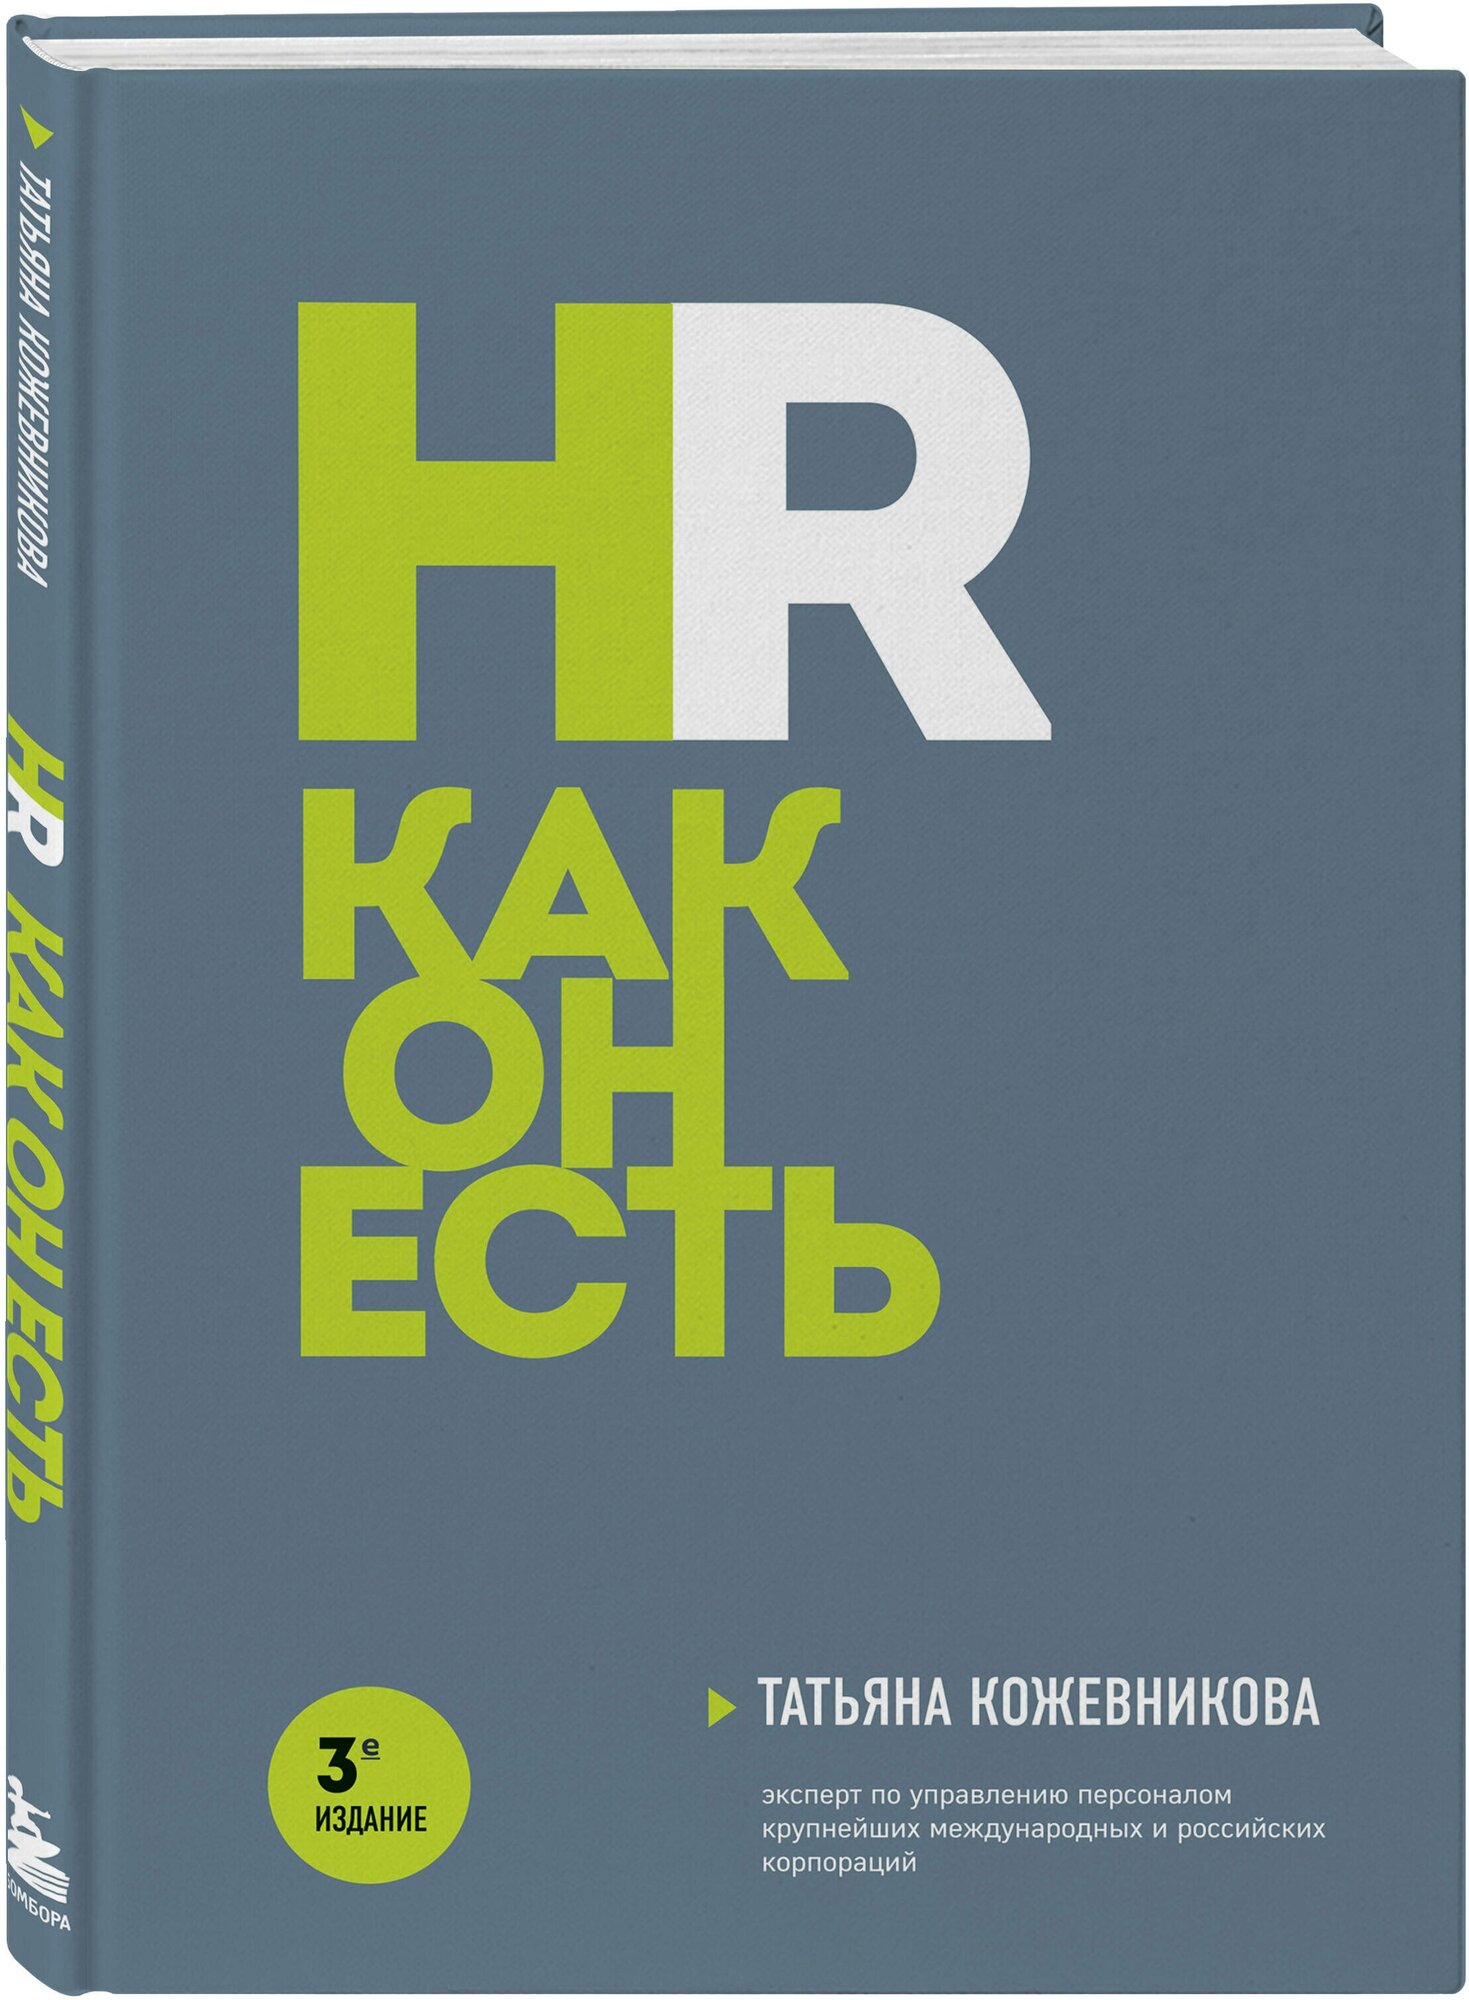 Кожевникова Т. Ю. HR как он есть. 3-е издание